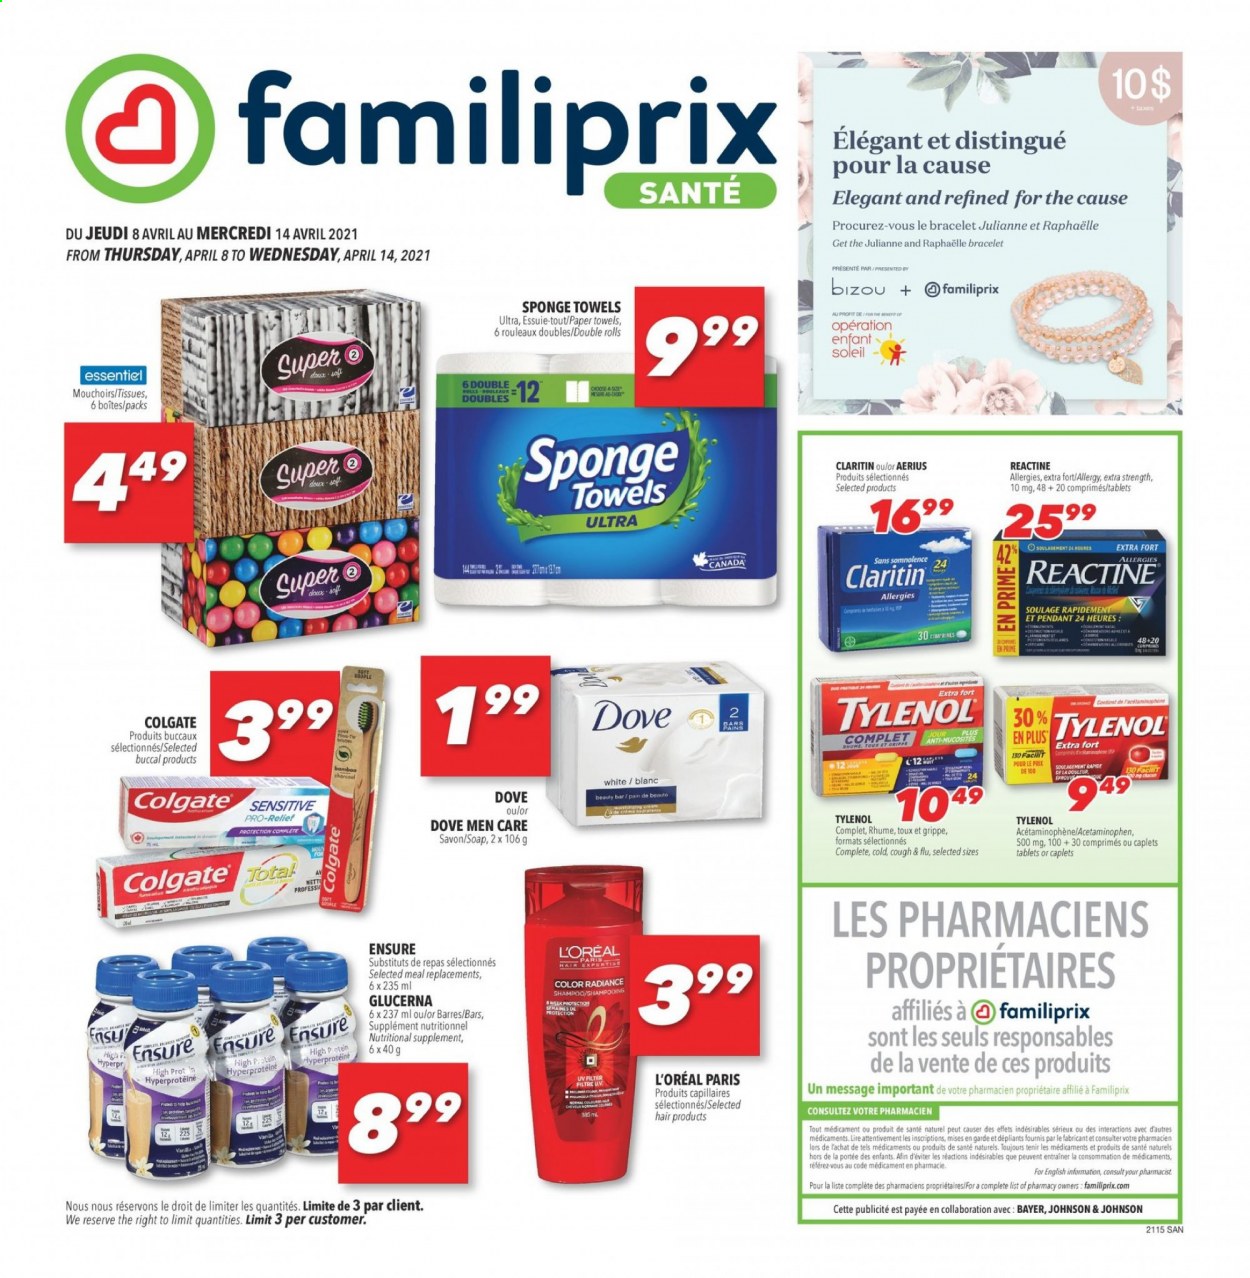 thumbnail - Familiprix Santé Flyer - April 08, 2021 - April 14, 2021 - Sales products - Johnson's, tissues, kitchen towels, paper towels, soap, L’Oréal, Tylenol, Glucerna, nutritional supplement, Bayer, shampoo. Page 1.